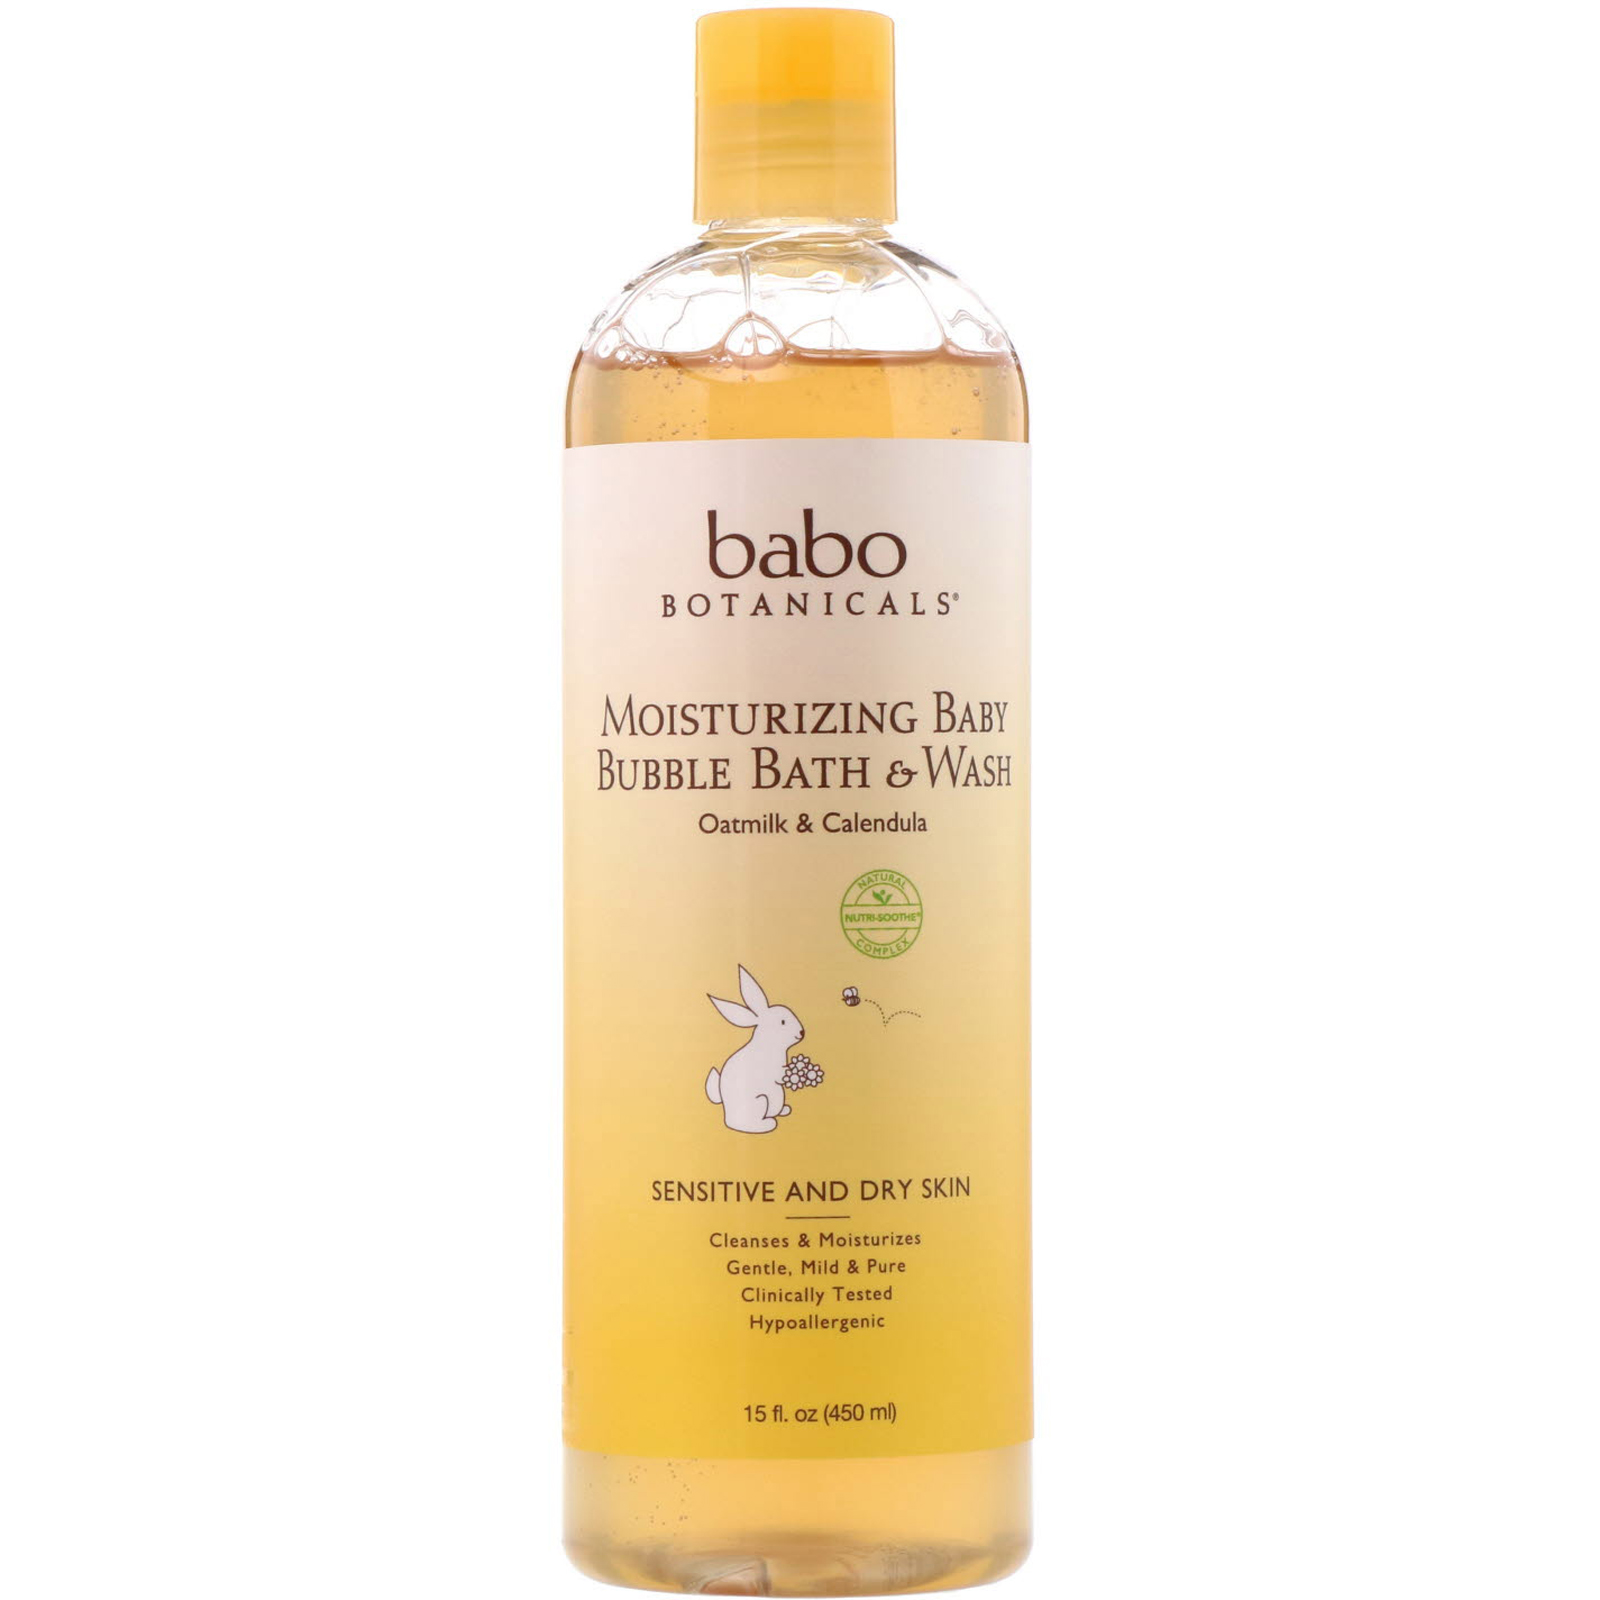 babo botanicals moisturizing baby shampoo